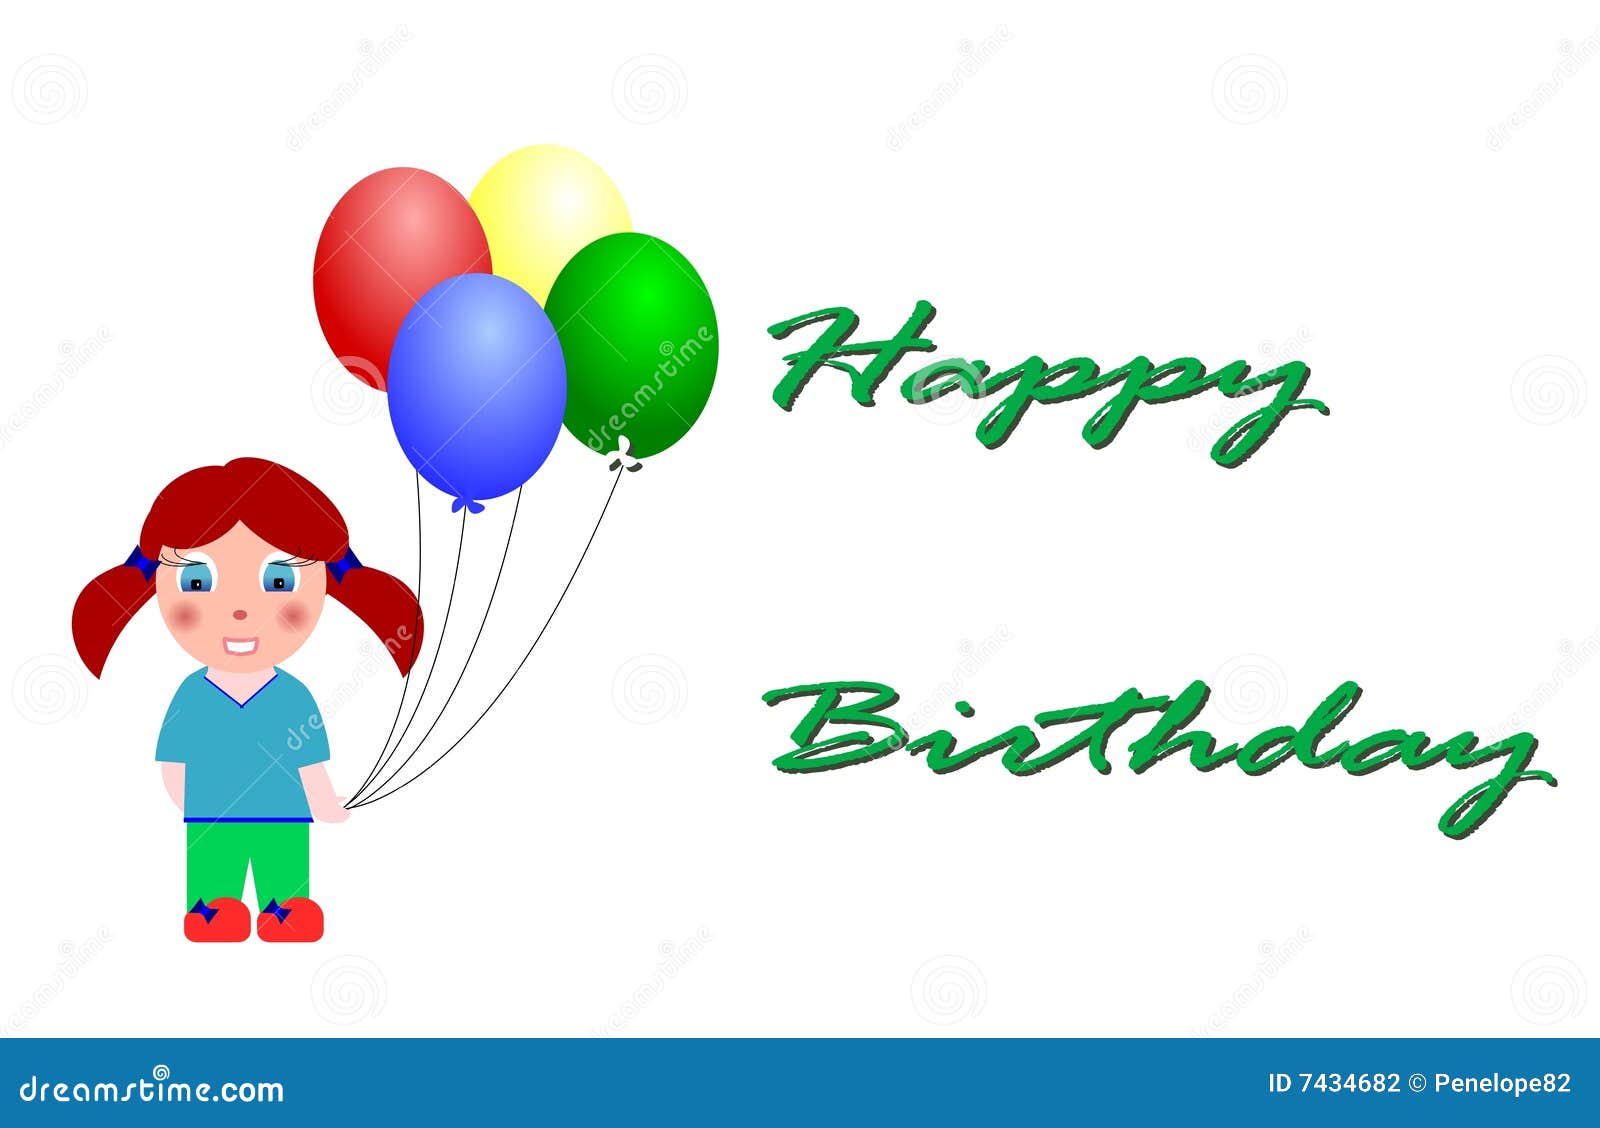 Happy Birthday stock illustration. Illustration of celebration - 7434682